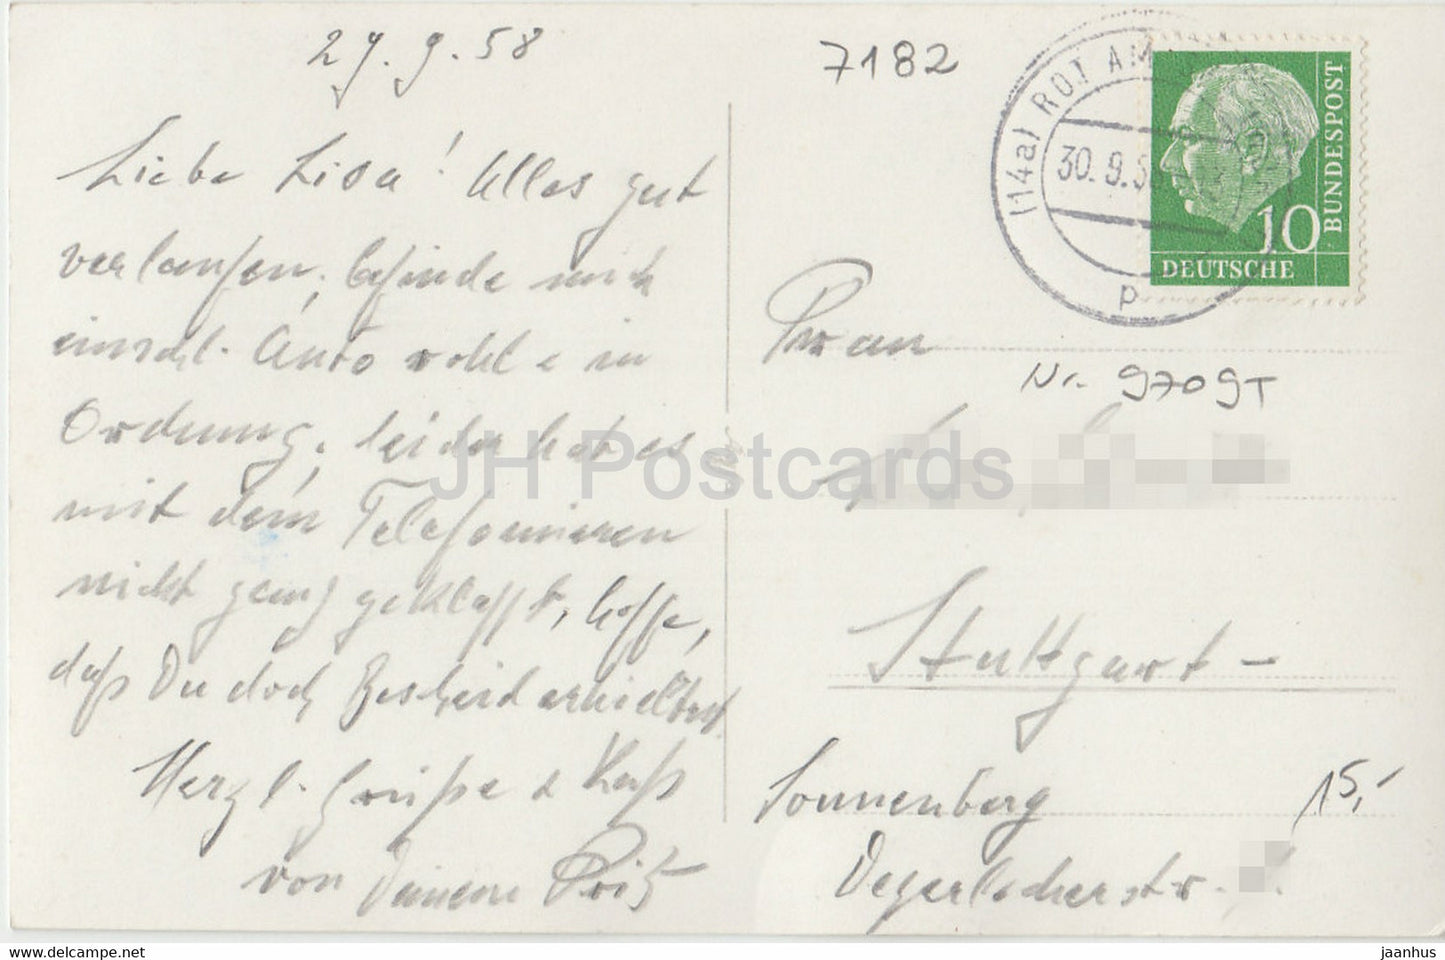 Amlishagen - Kreis Gerabronn - 154397 - old postcard - 1958 - Germany - used